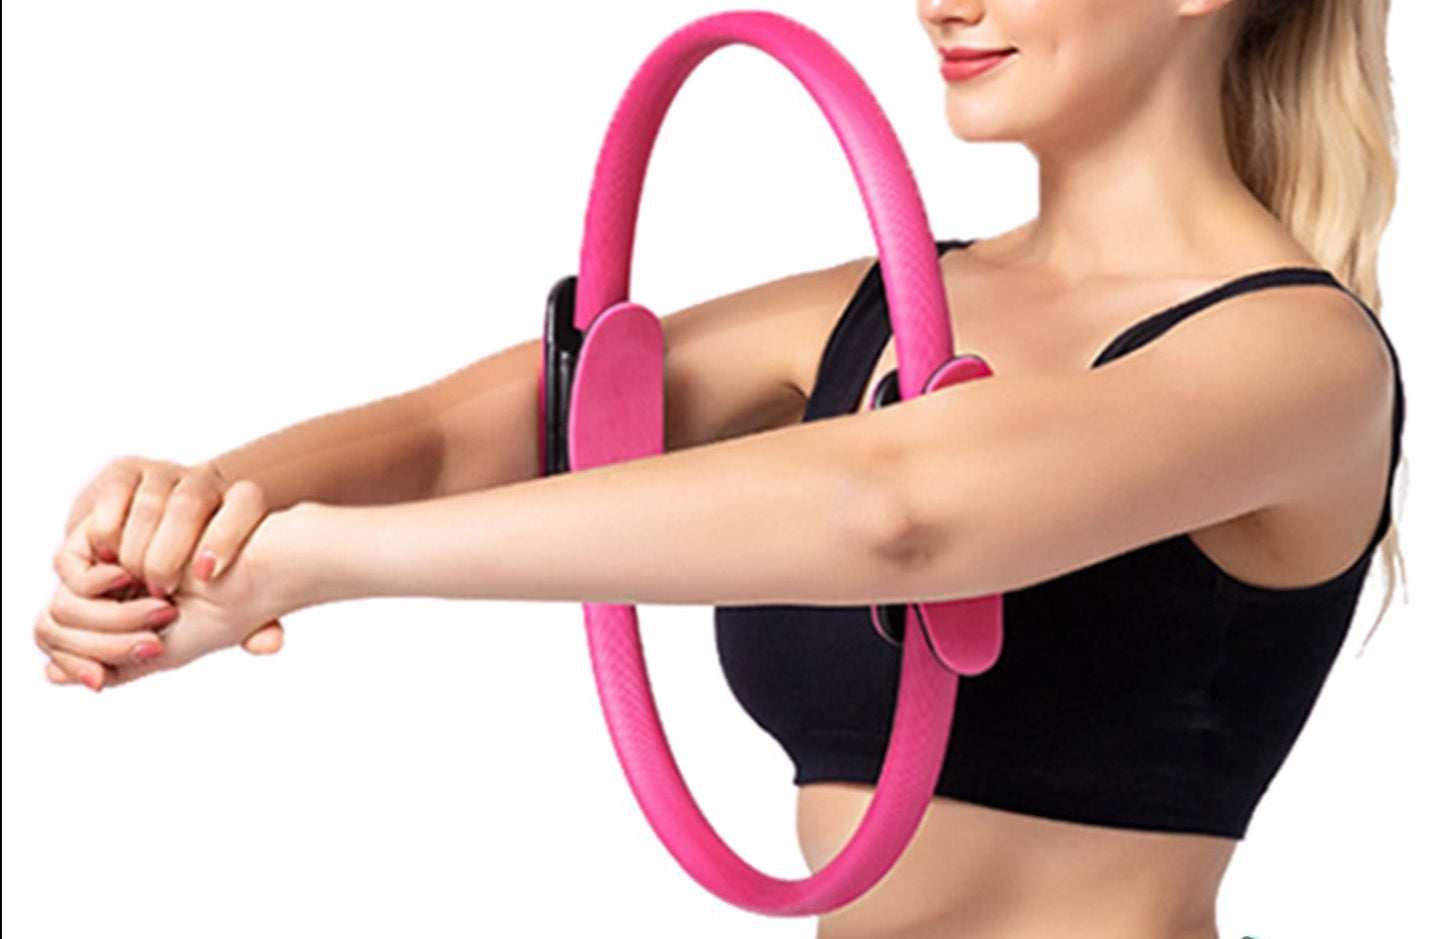 Pilates Ring 38 CM - Pink